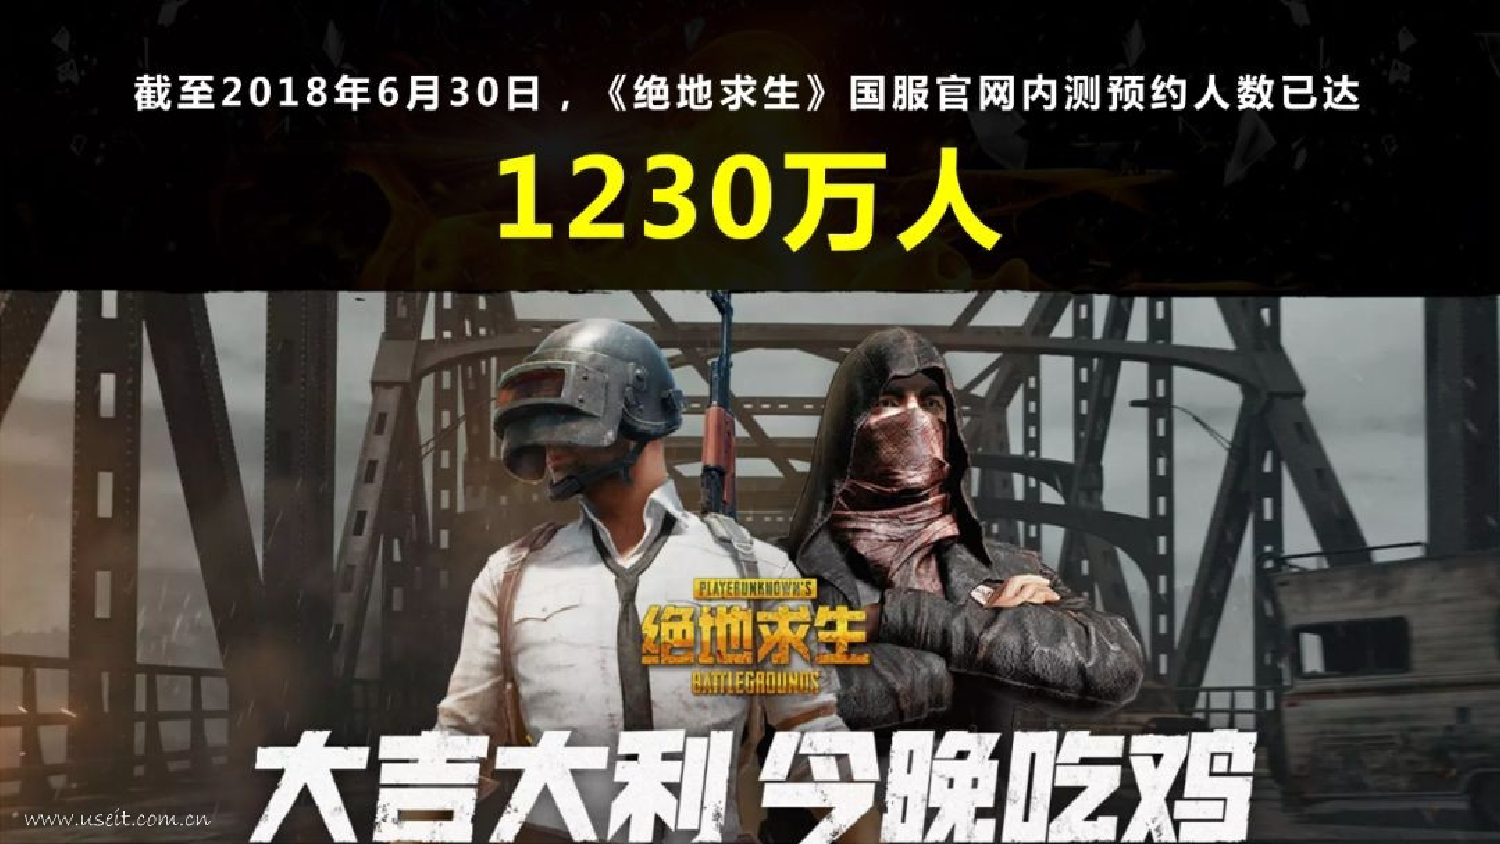 360发布《2018中国PC端游戏研究报告》